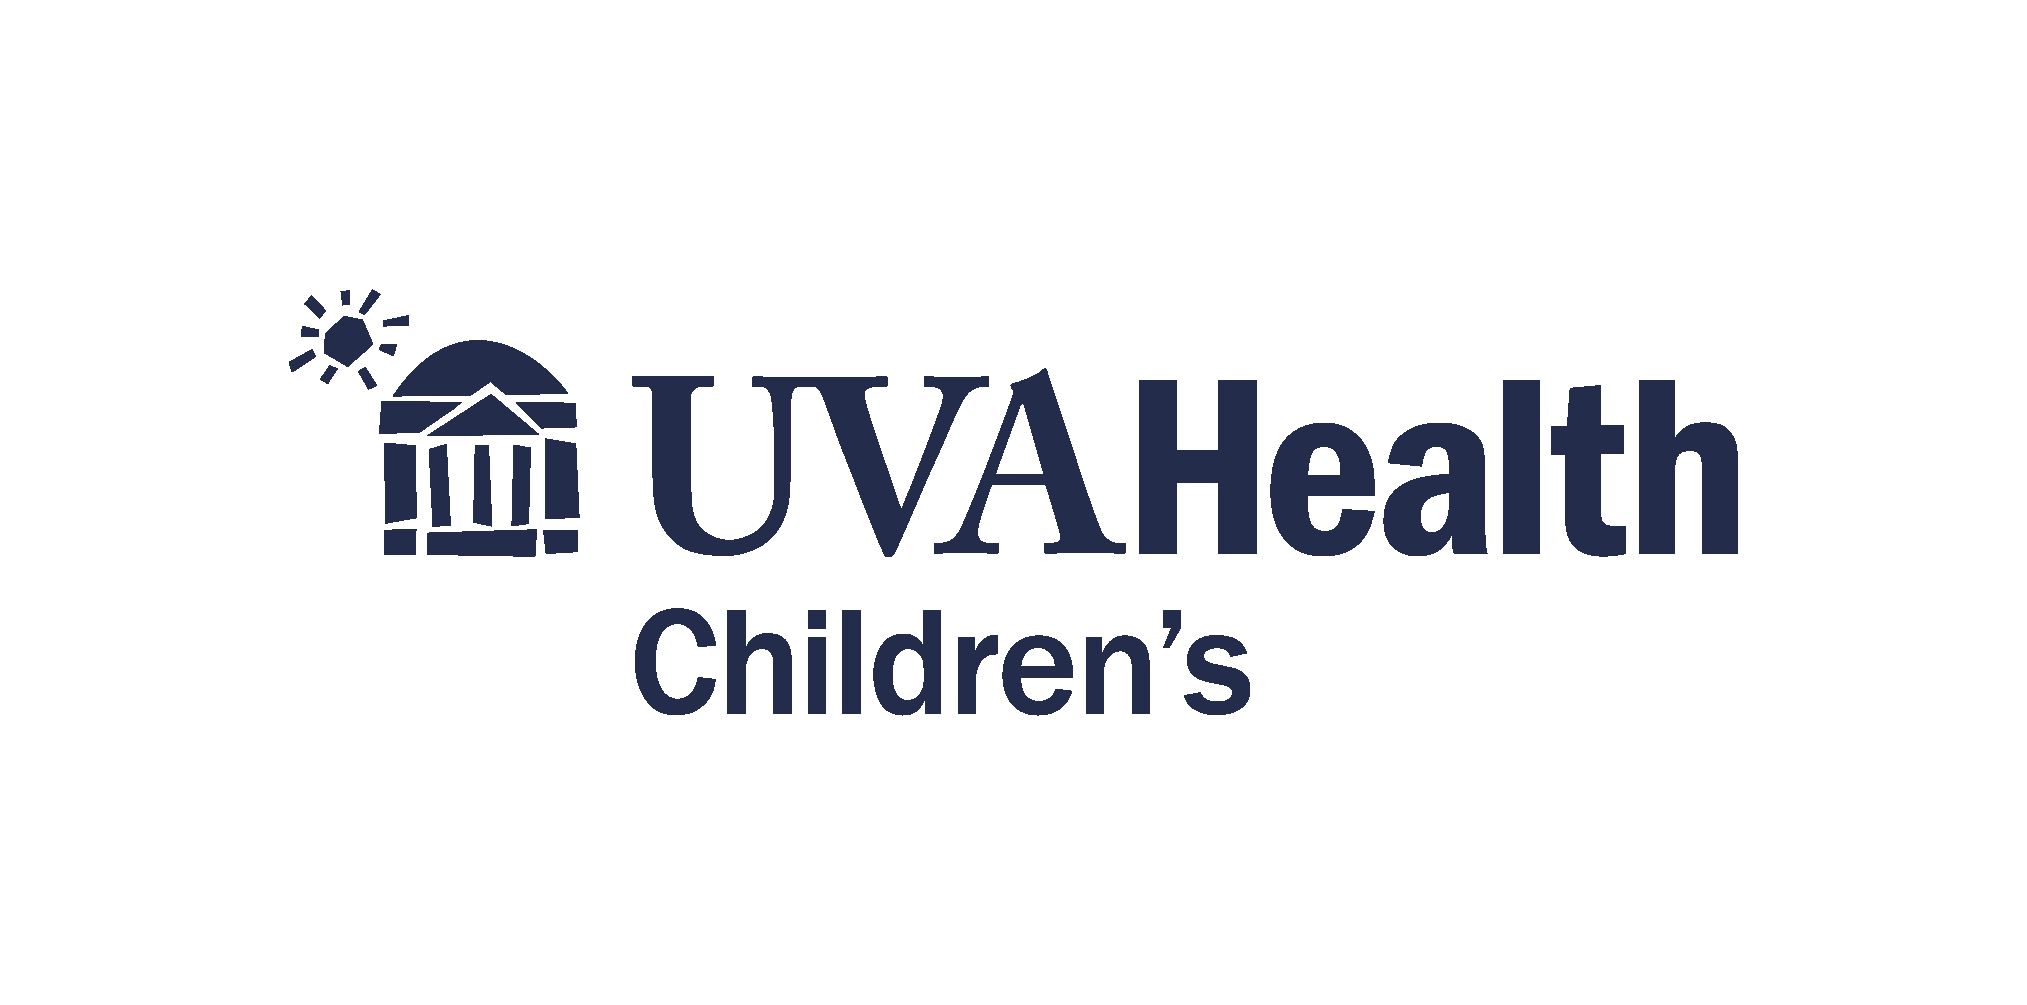 UVA Health Children's full color logo